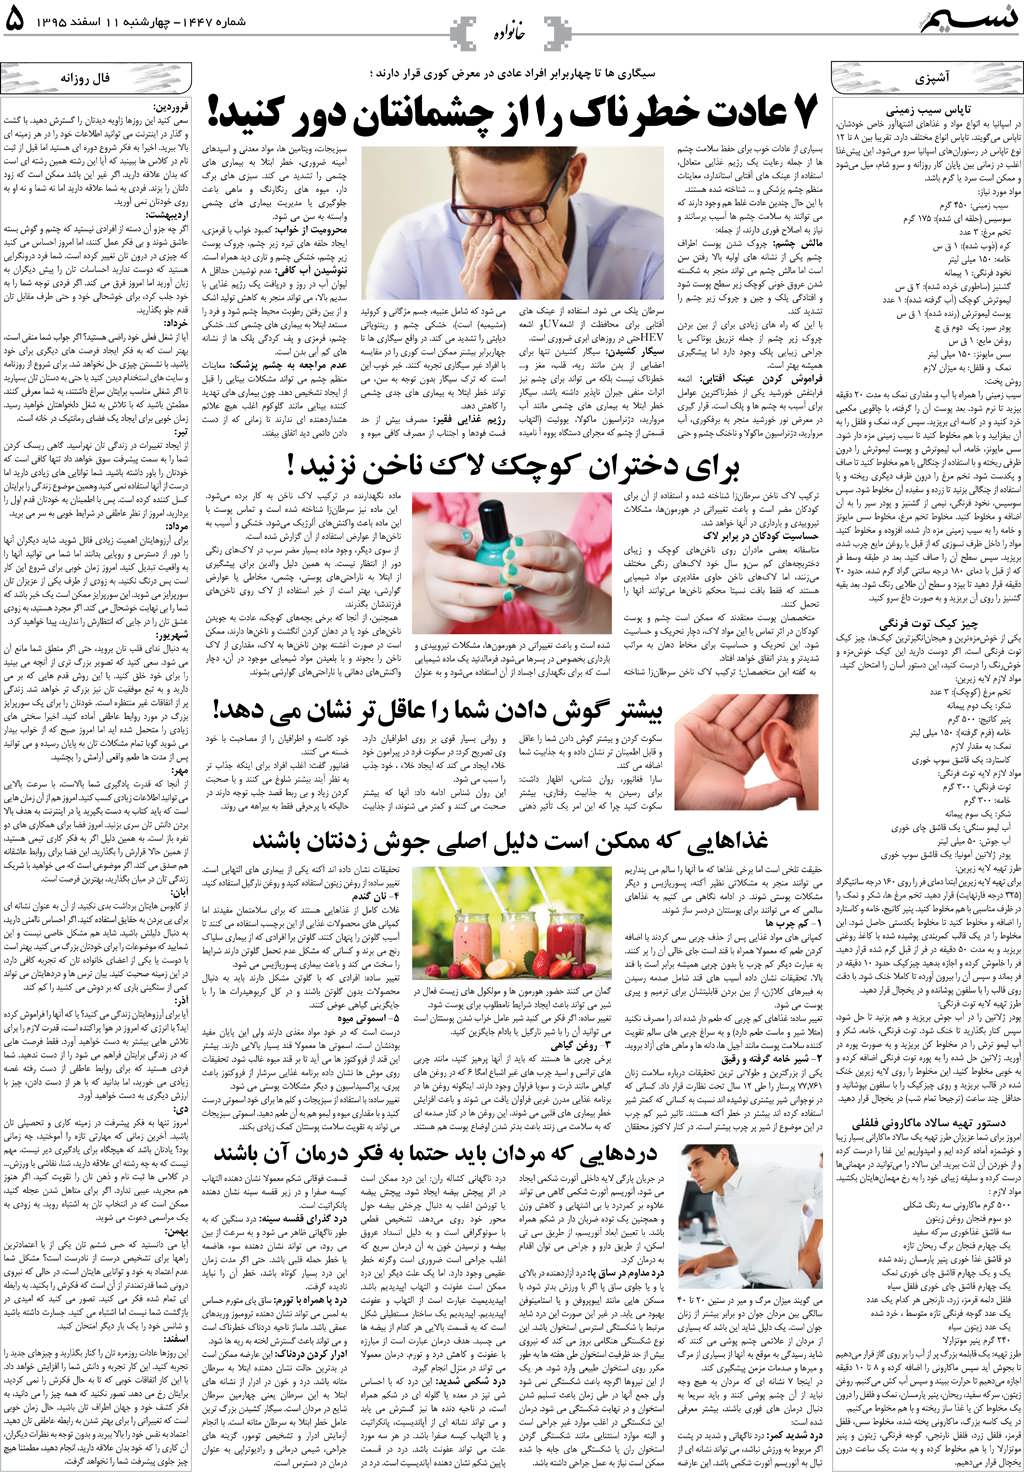 صفحه خانواده روزنامه نسیم شماره 1447